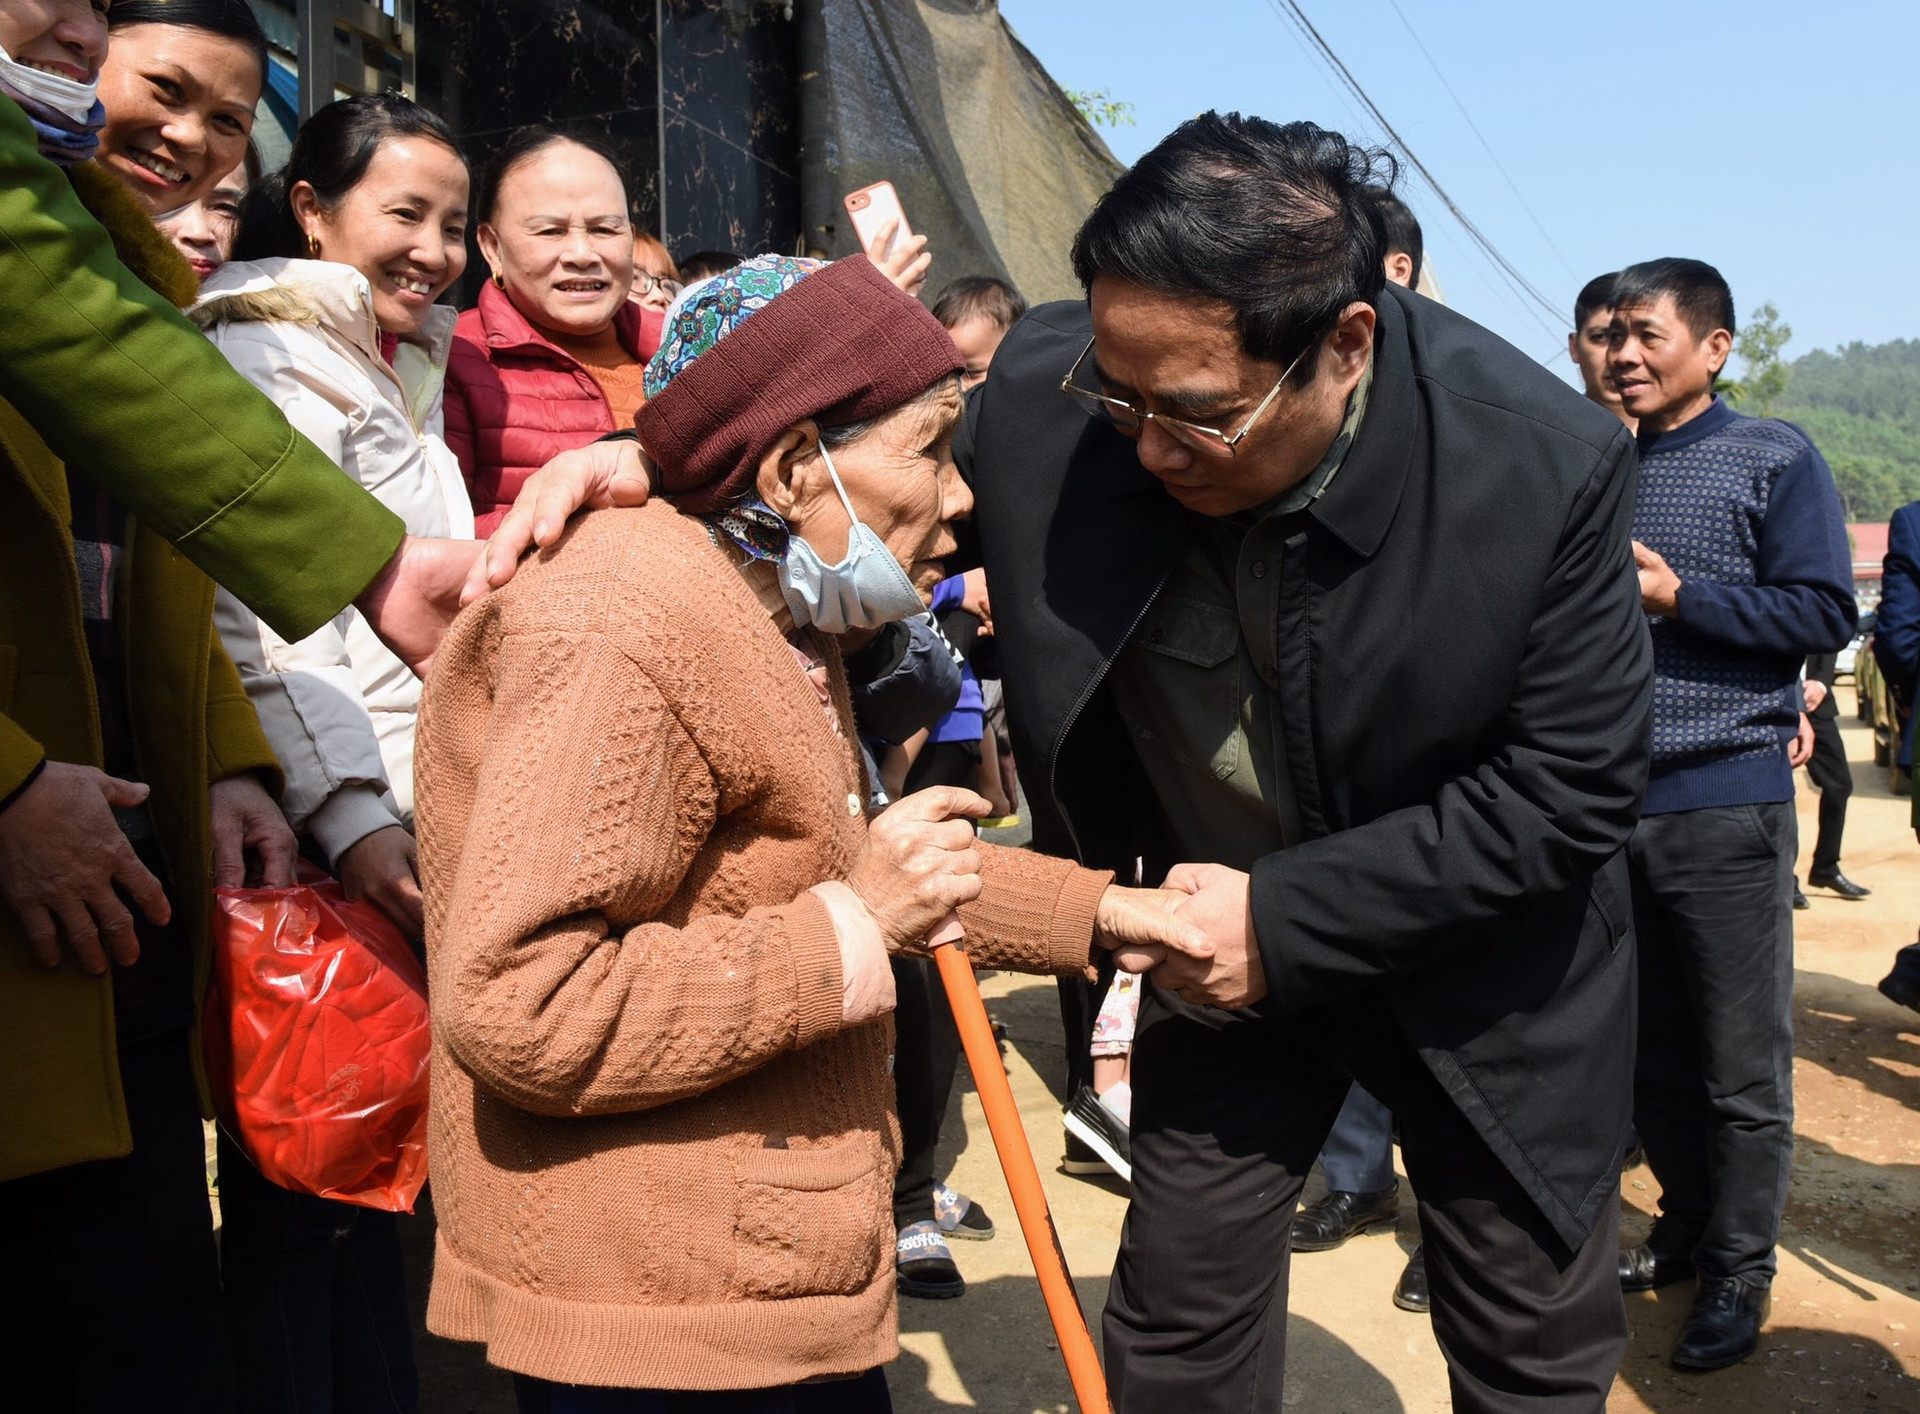 Thủ tướng kiểm tra, đôn đốc dự án cao tốc Tuyên Quang-Phú Thọ, chúc Tết công nhân và người dân khu tái định cư - Ảnh 6.